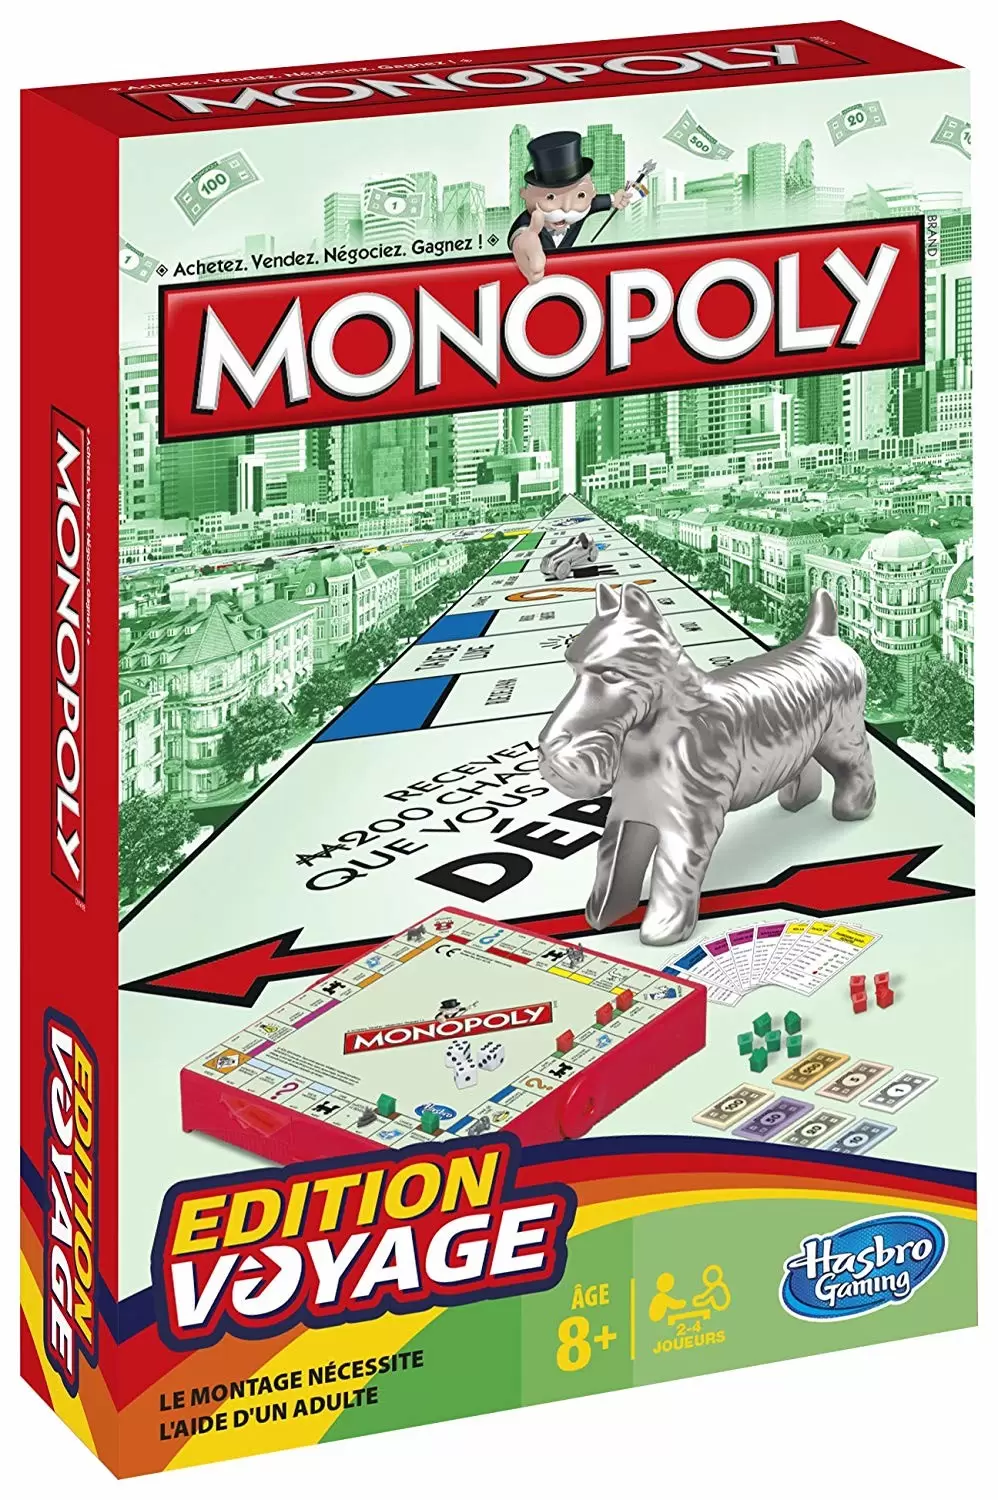 Monopoly - voyage